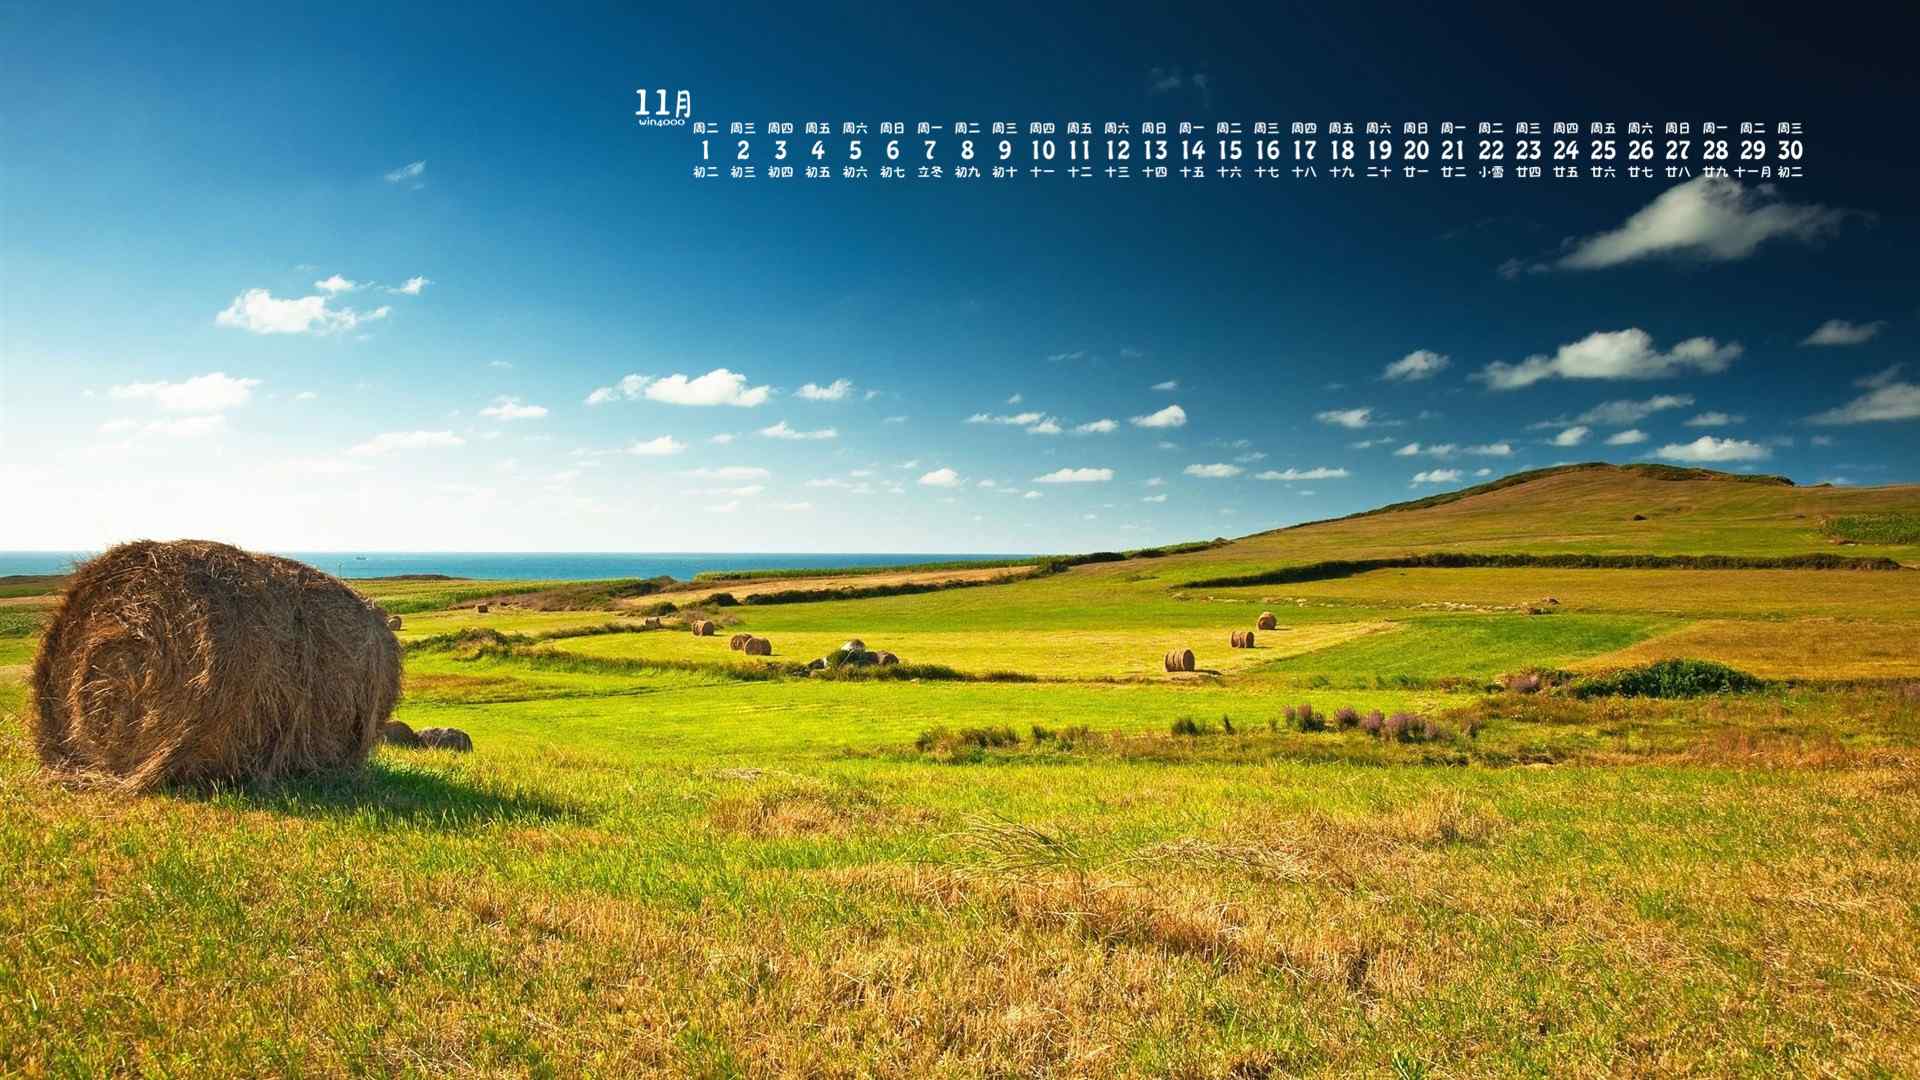 2016年11月日历唯美的蓝天草地风景图片桌面壁纸